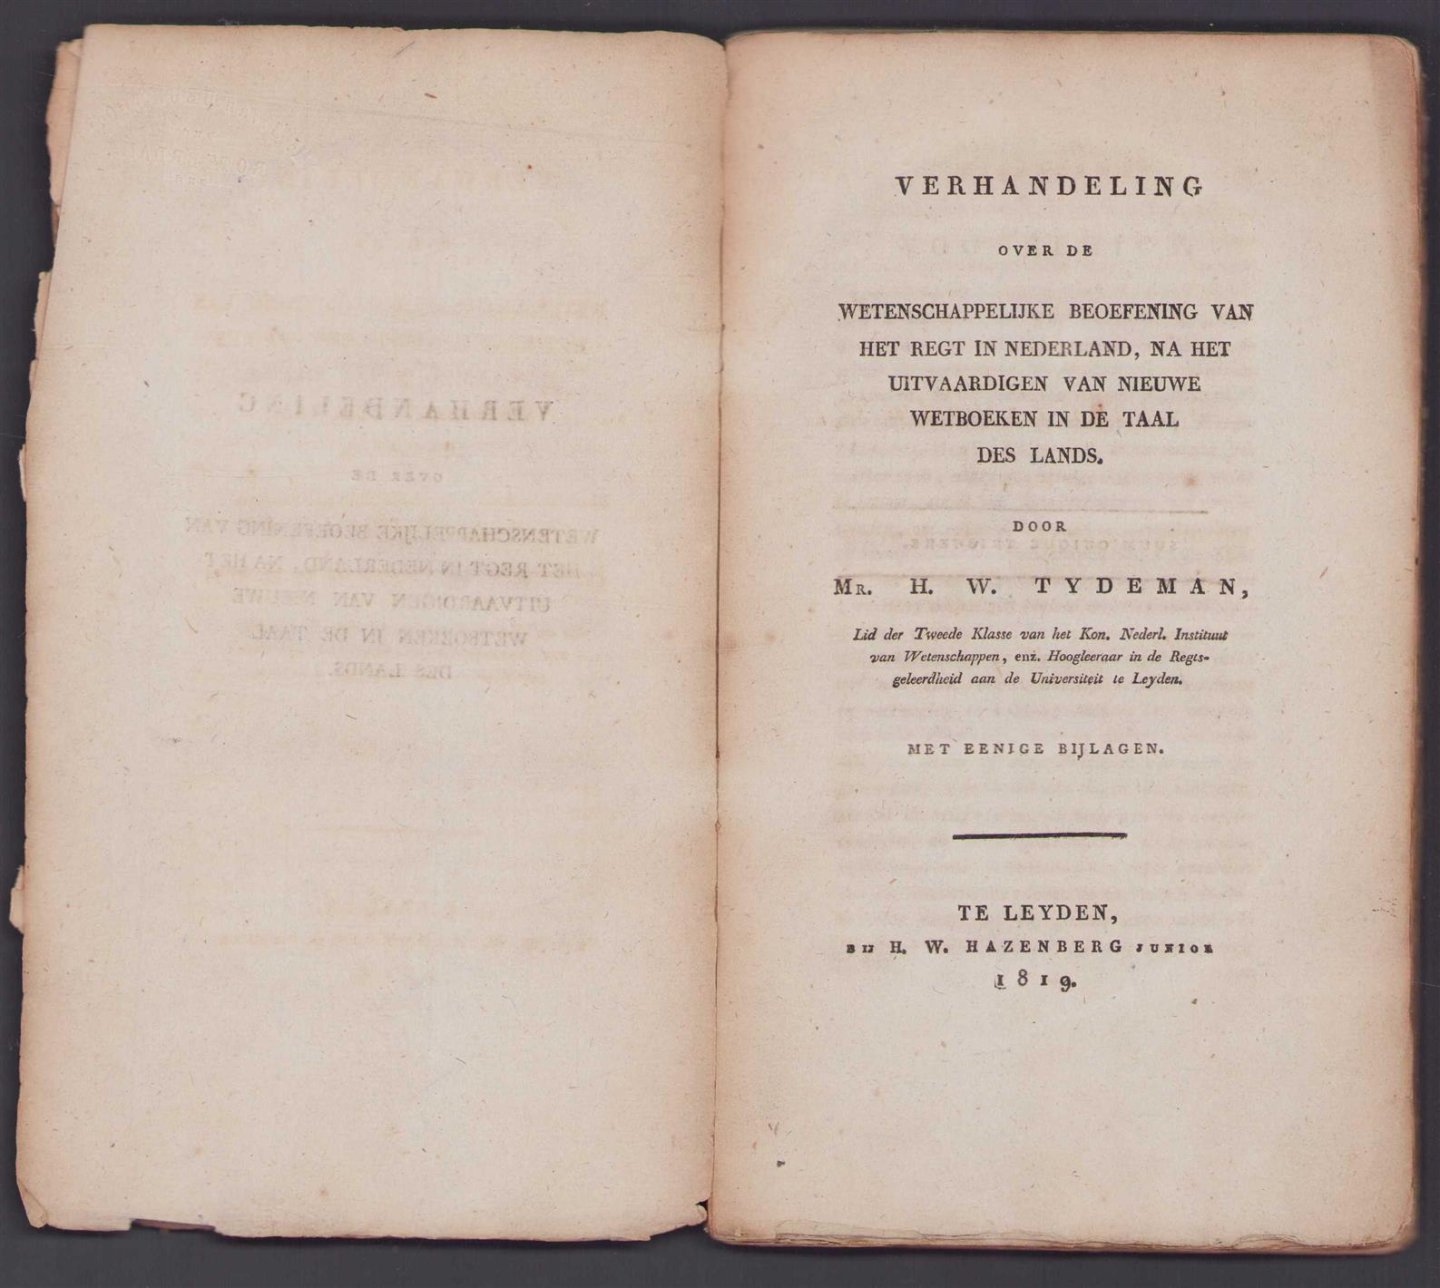 Tydeman, H.W. - Verhandeling over de wetenschappelijke beoefening van het regt in Nederland, na het uitvaardigen van nieuwe wetboeken in de taal des lands, met eenige bijlagen